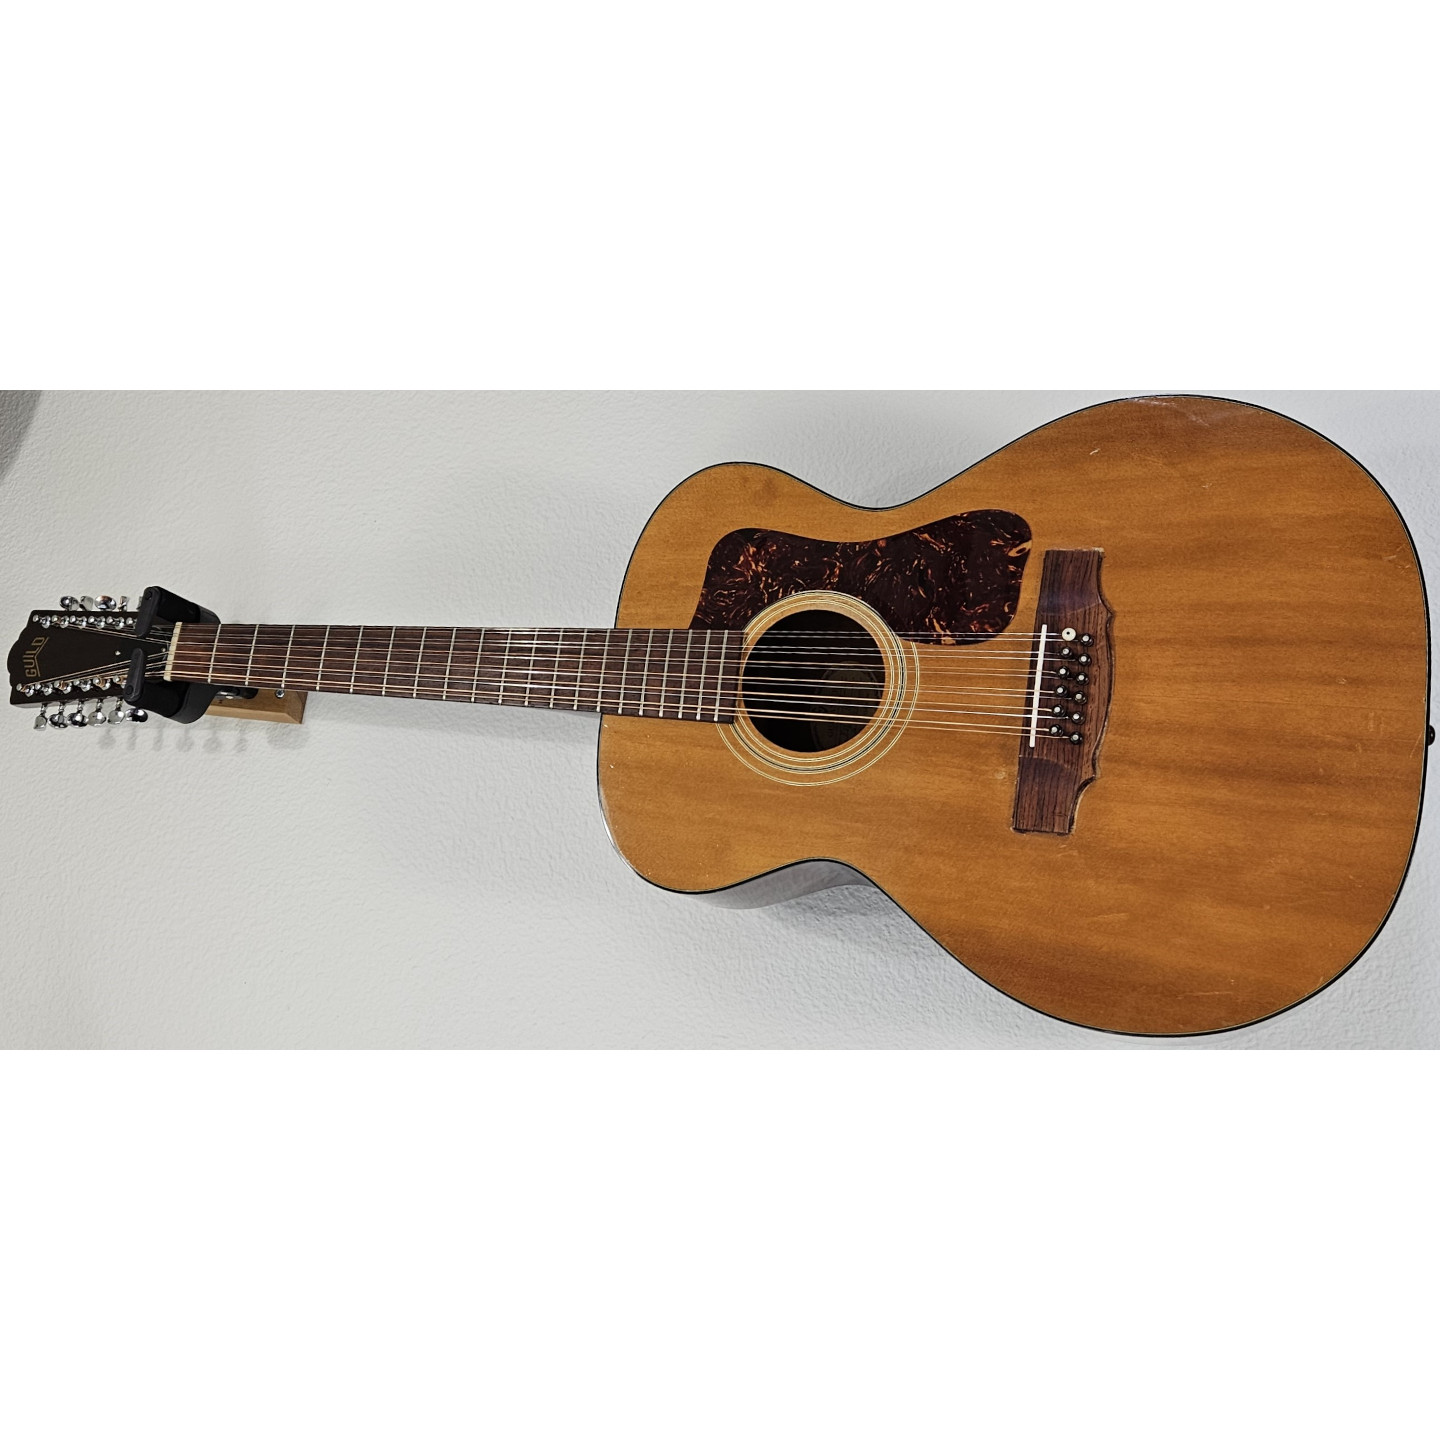 1971 Guild F-112-NT 12-String Natural Vintage F112NT Acoustic Guitar